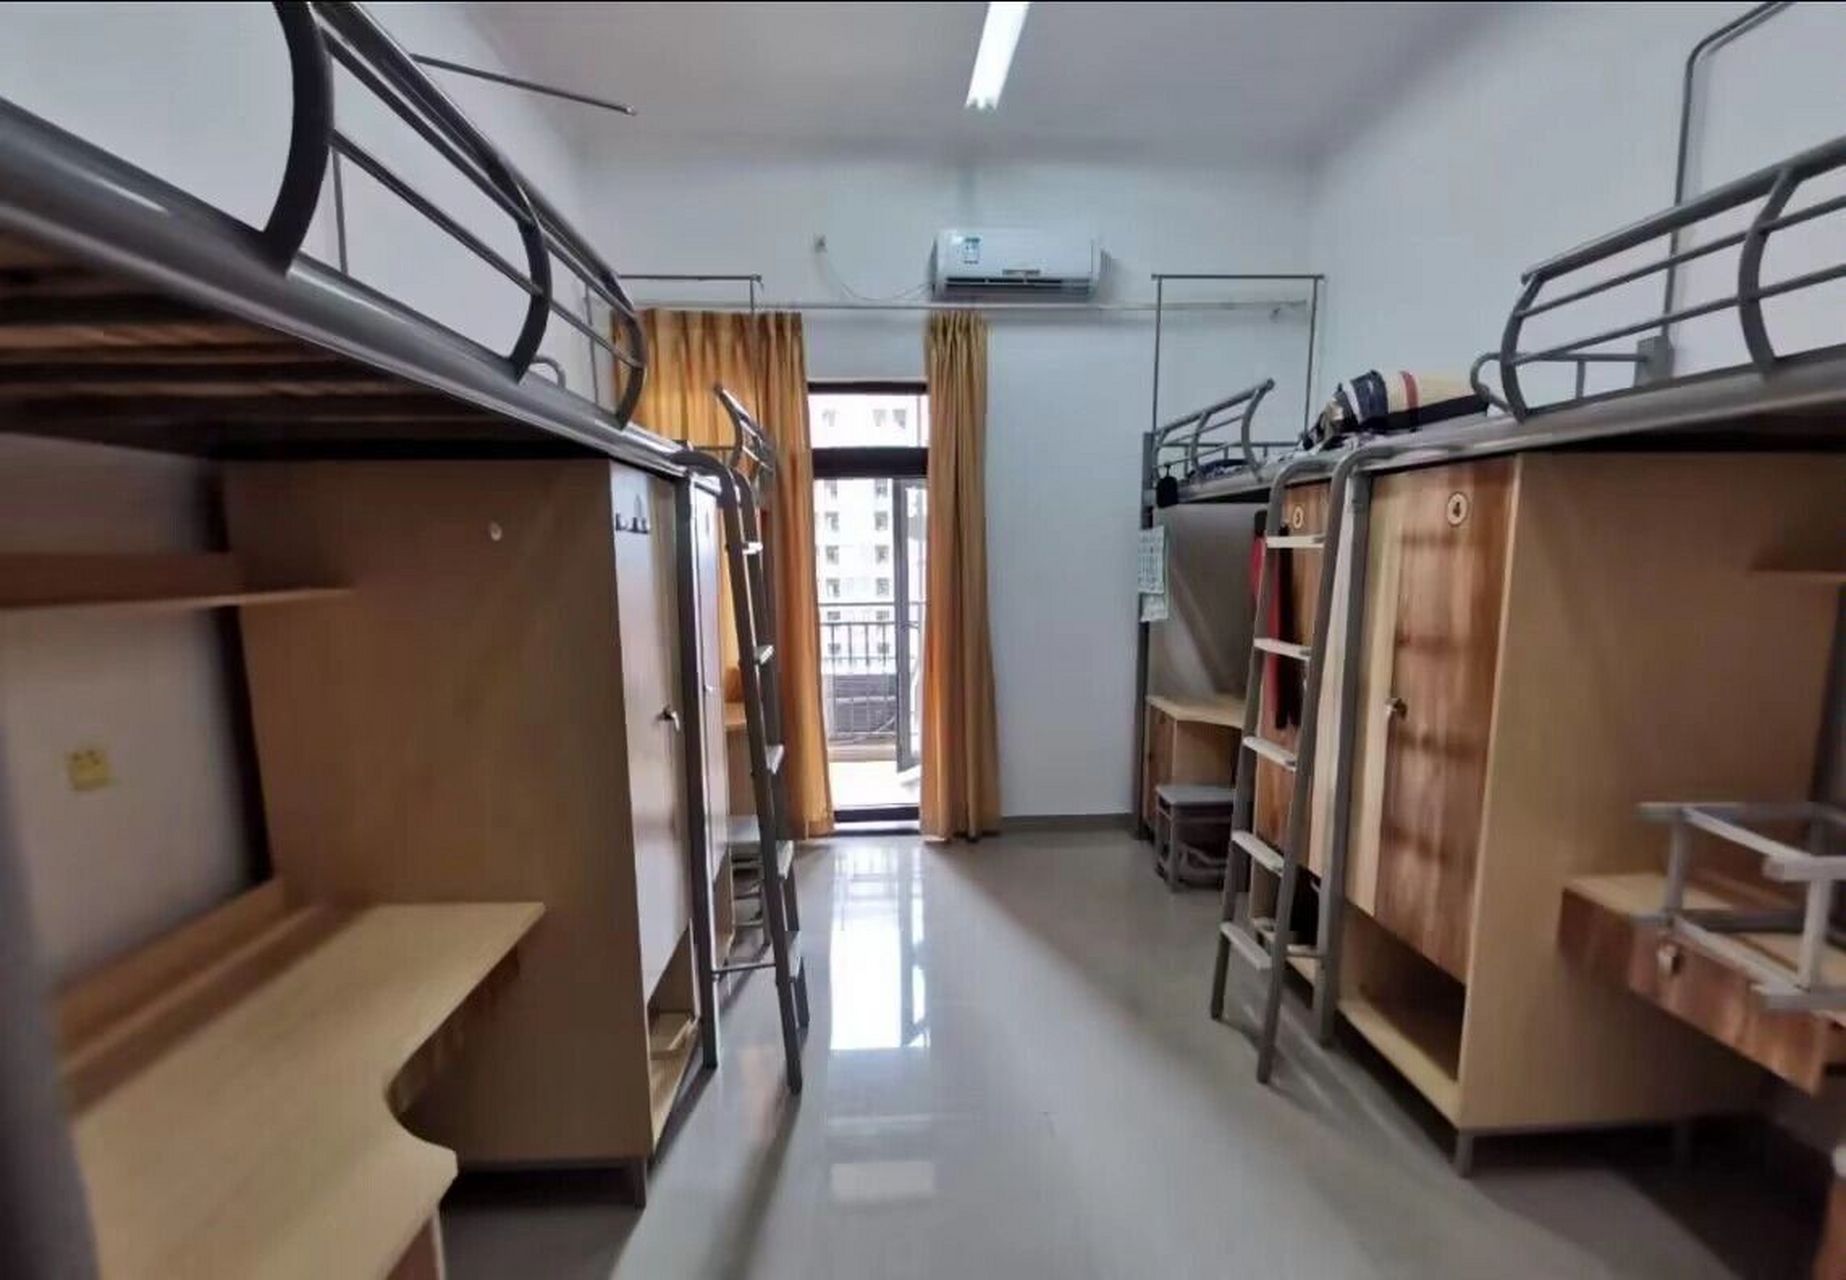 填了重庆理工大学志愿的学弟学妹们看过来,两江校区的宿舍环境,4人间